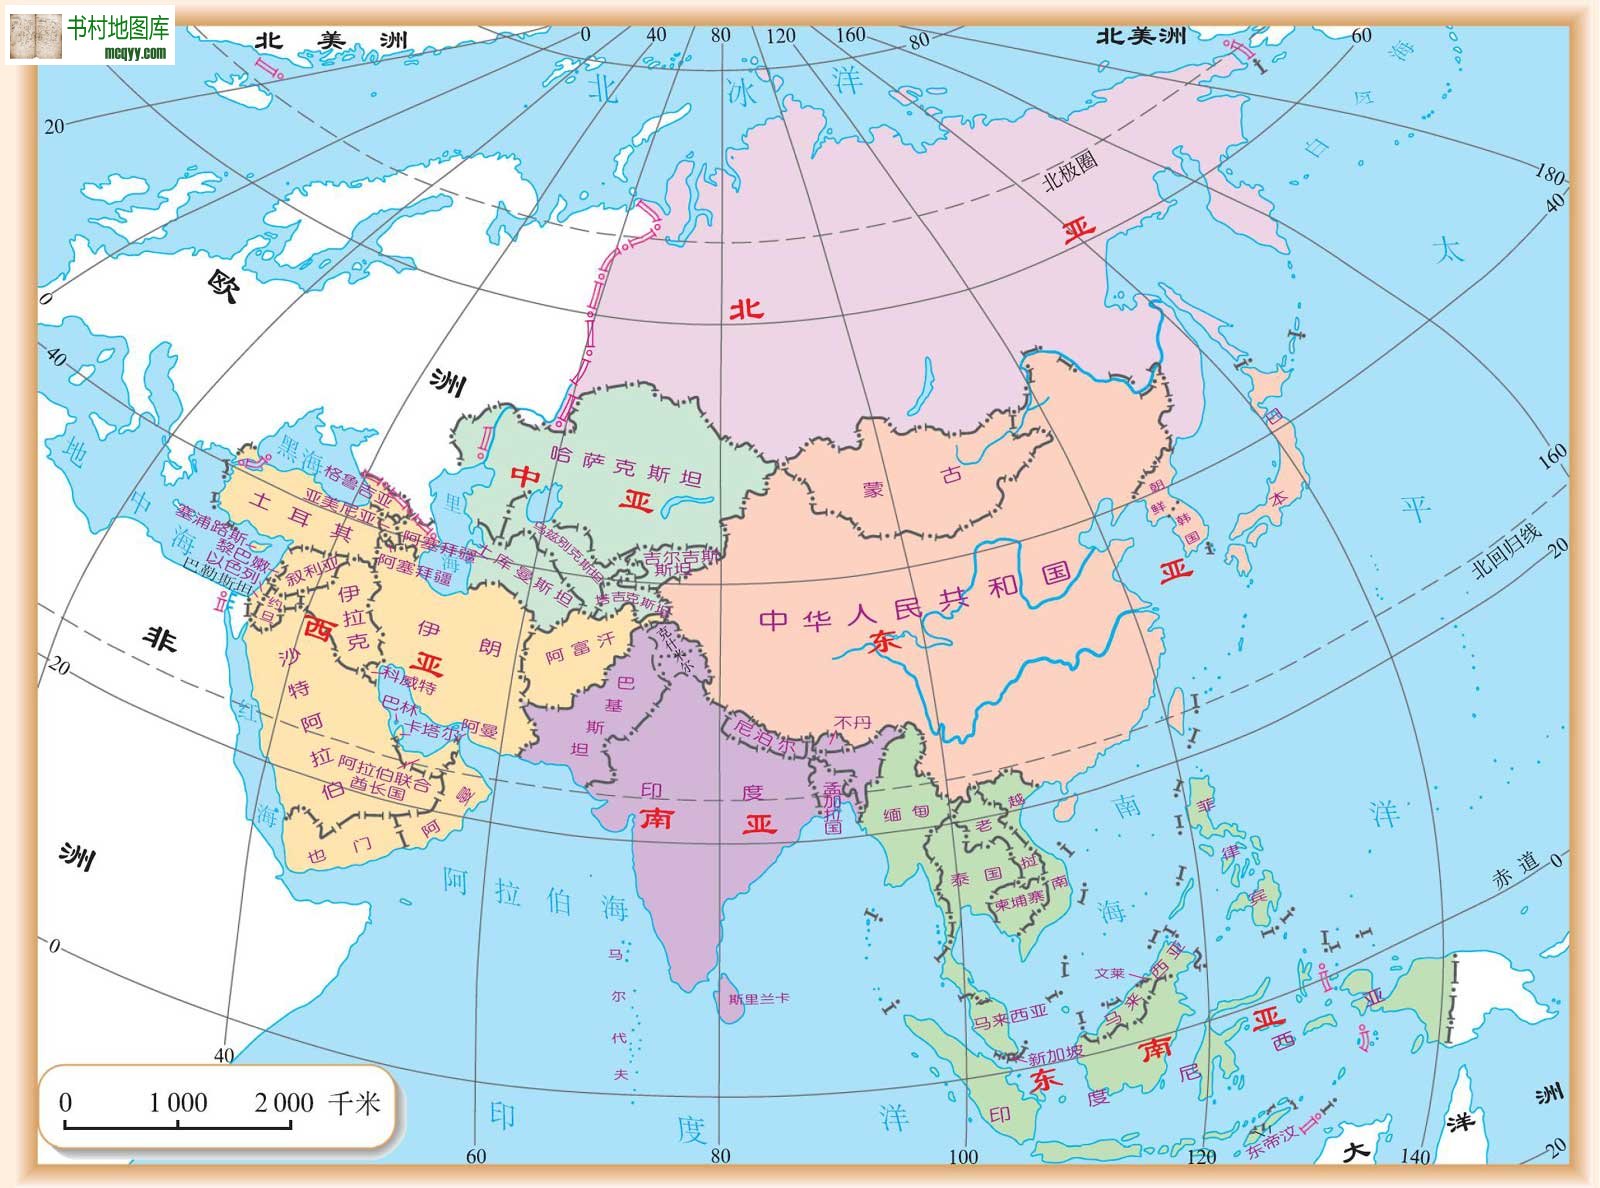 亚洲人口最少的国家_地图看世界 2018年地球有多少人口及世界人口的分布